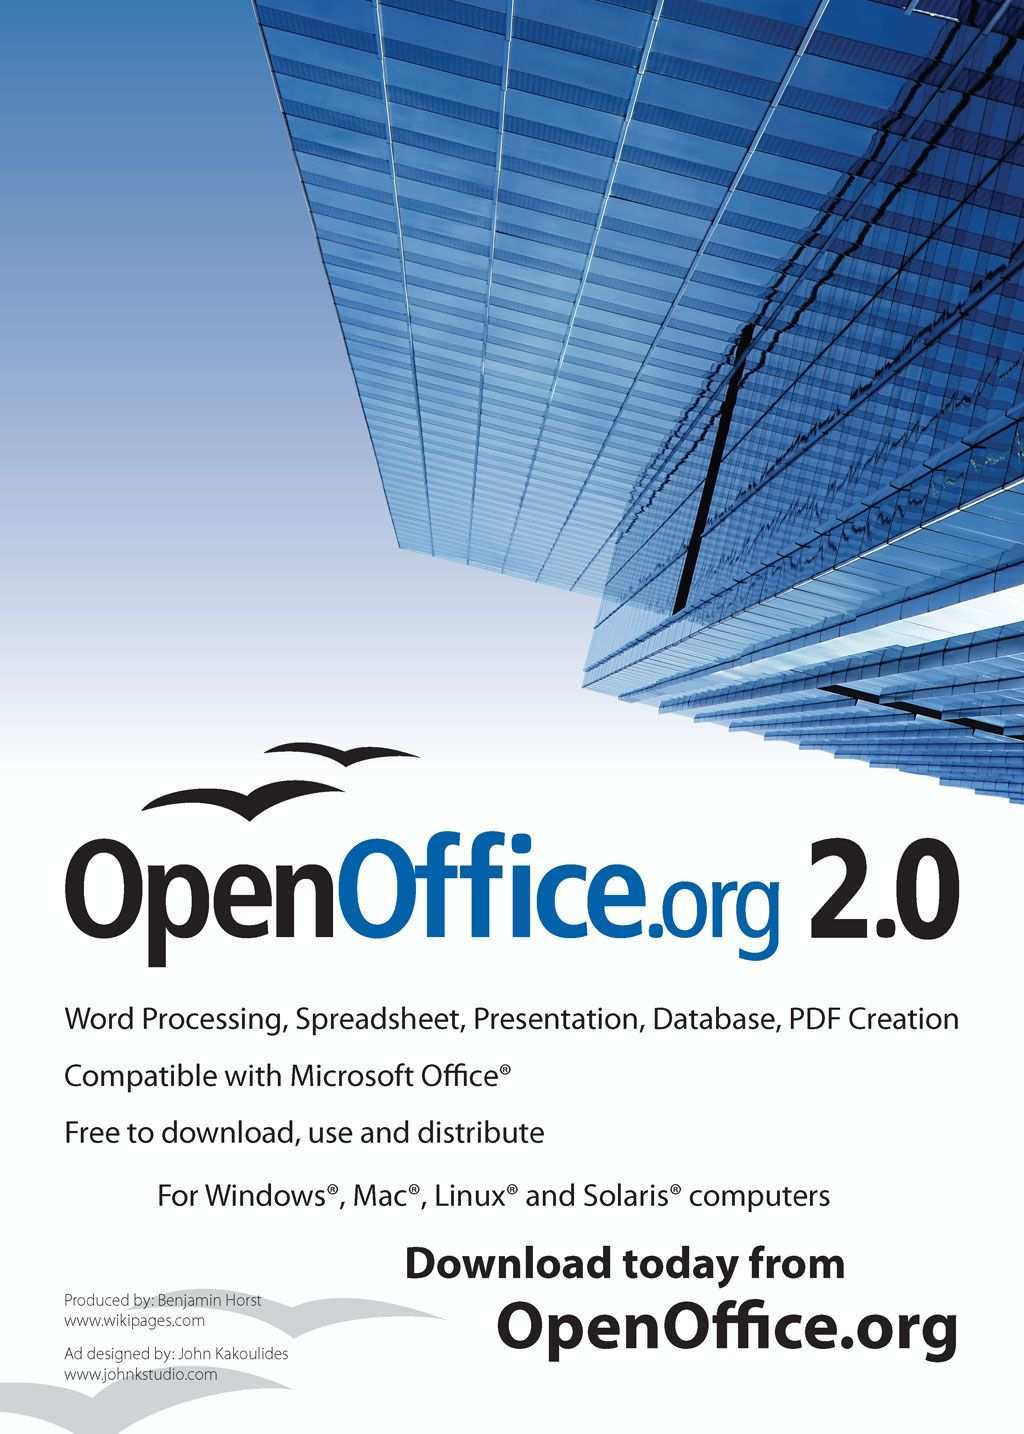 Open Office Spreadsheet Tutorial Pdf In 2020 Spreadsheet Tutorial Pdf